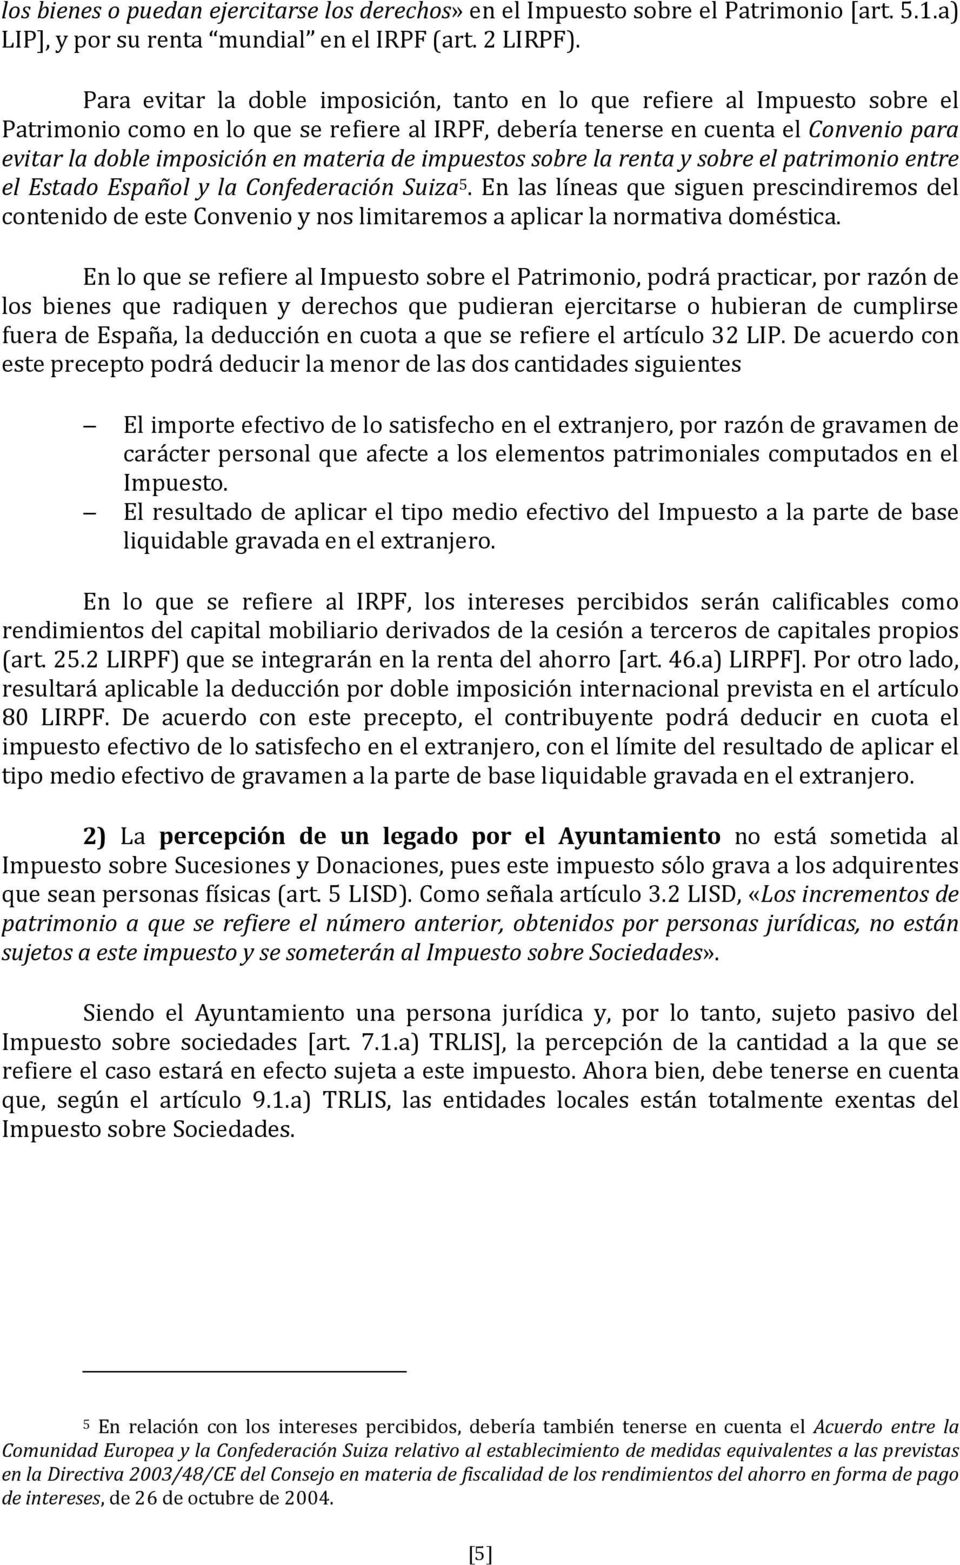 materia de impuestos sobre la renta y sobre el patrimonio entre el Estado Español y la Confederación Suiza 5.